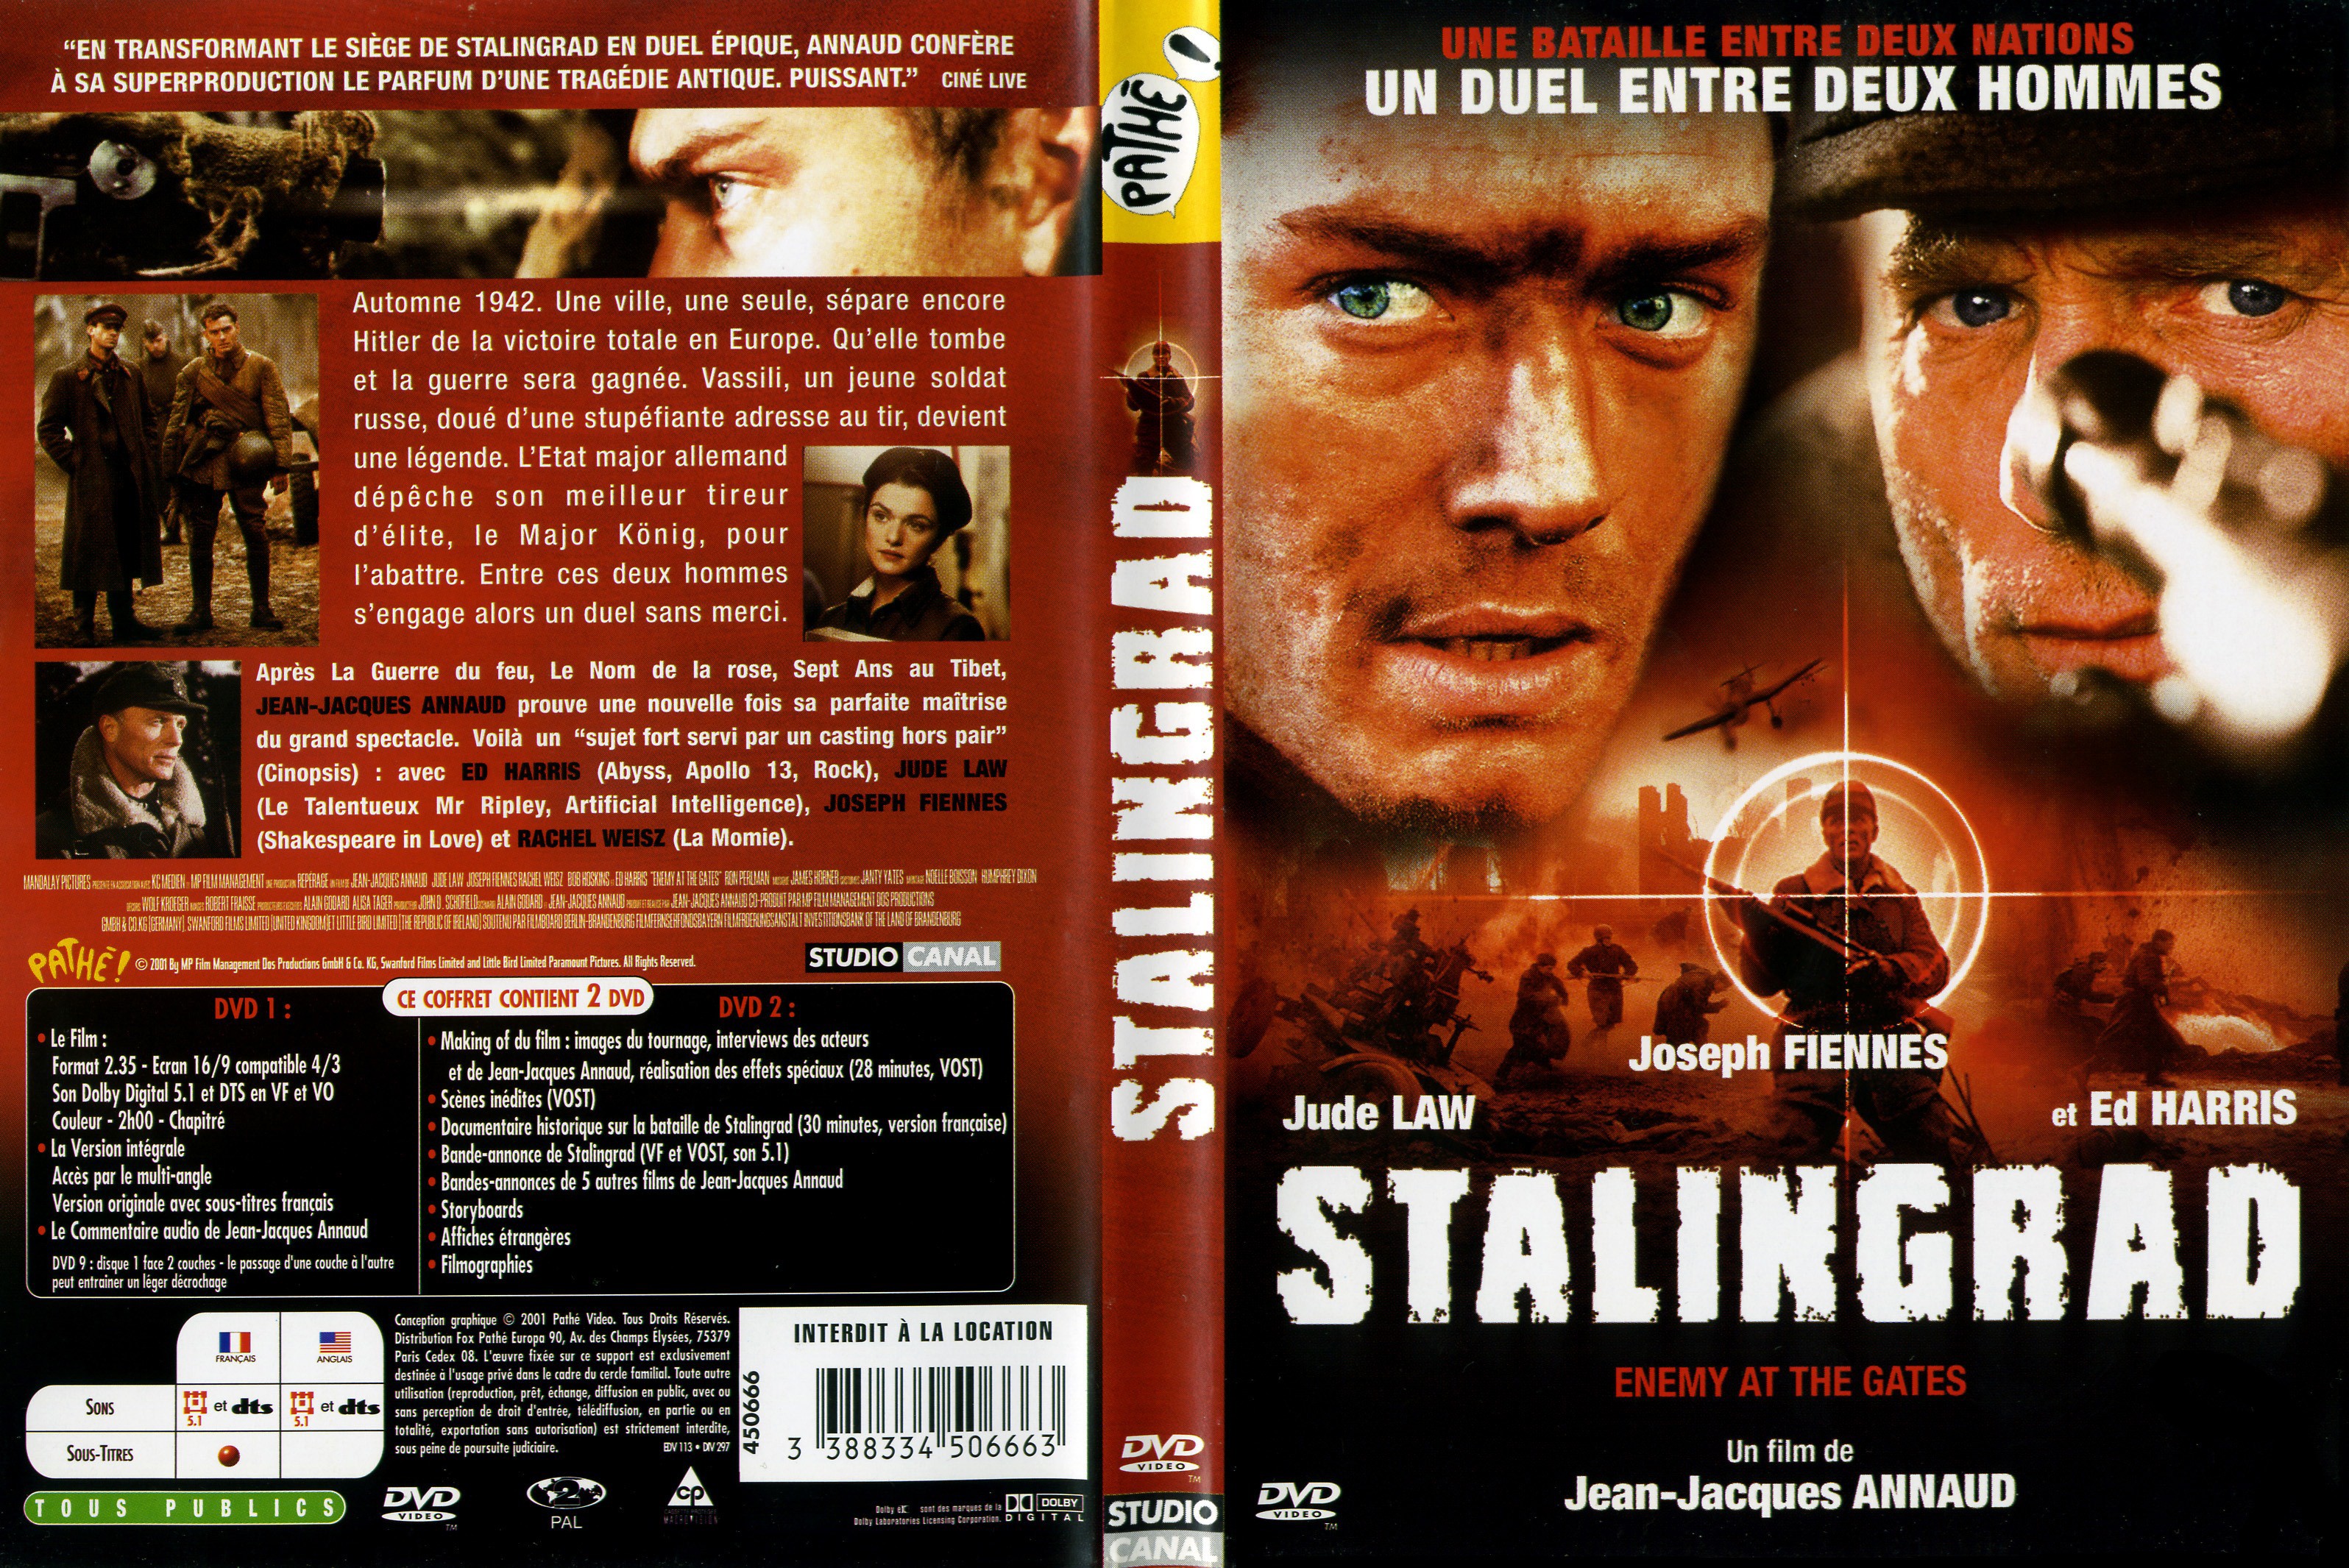 Jaquette DVD Stalingrad v2